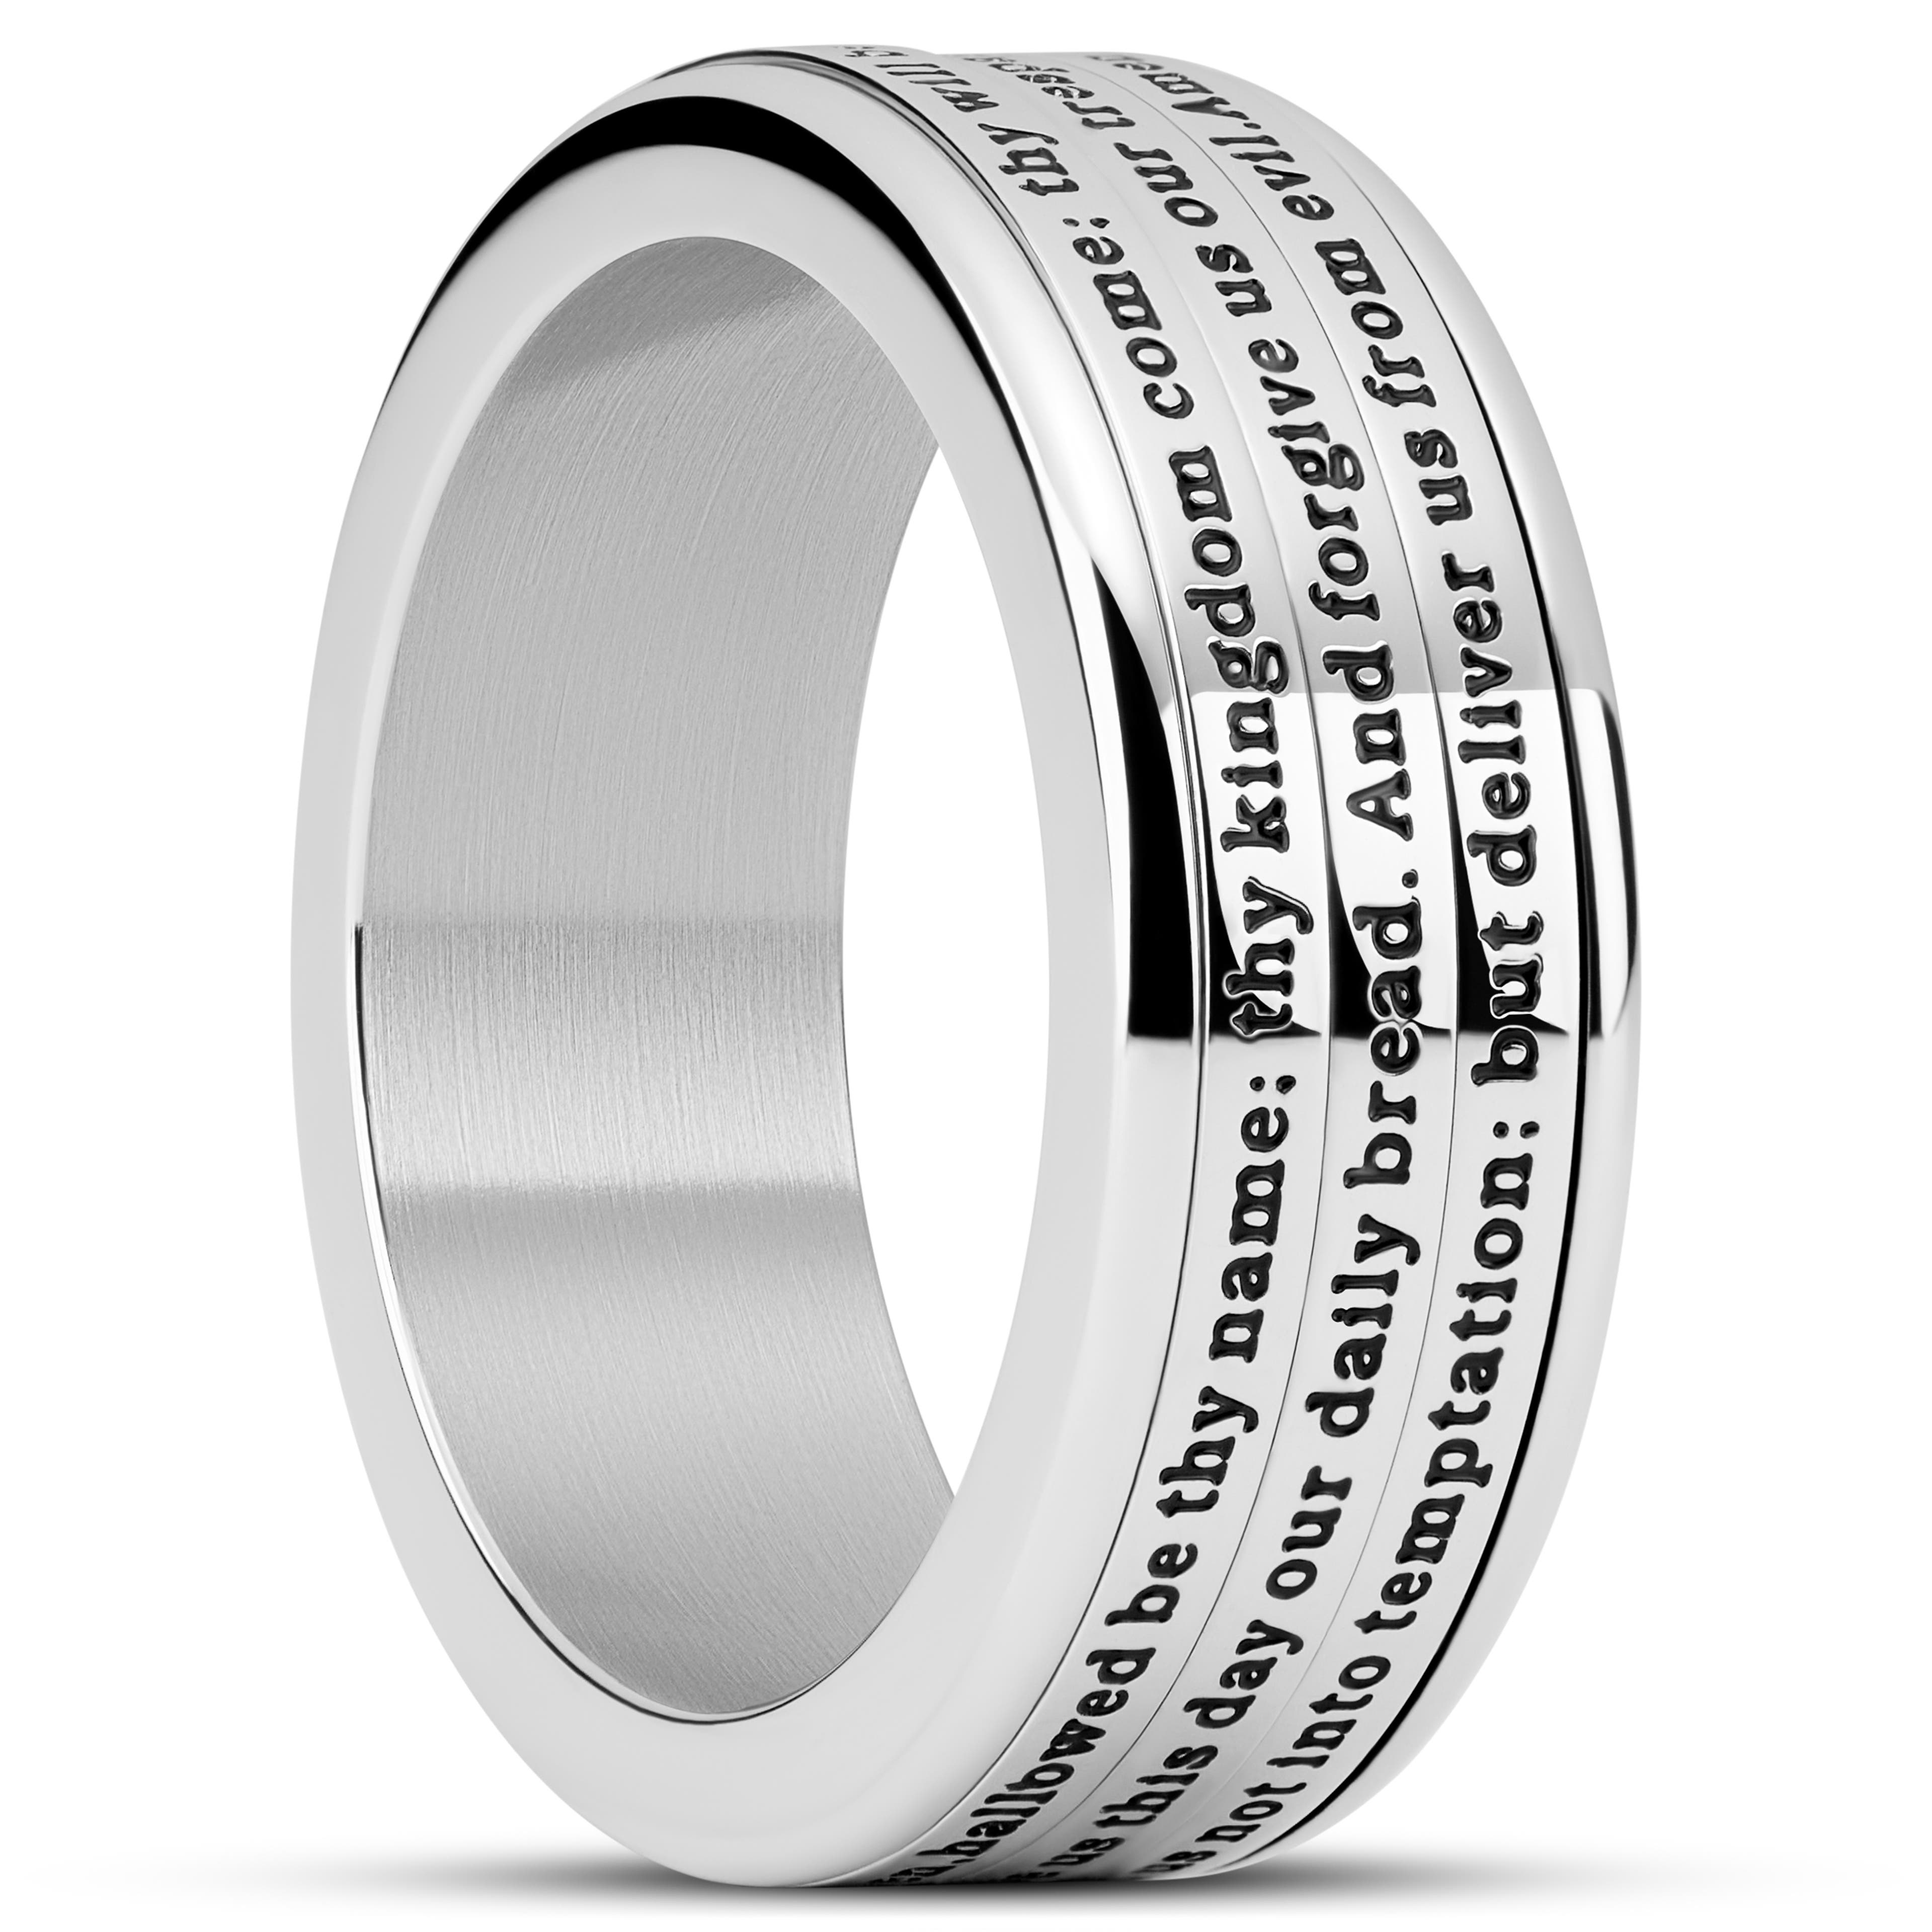 Enthumema | 8 mm Silberfarbener Edelstahl Englisches Vaterunser Fidget Ring